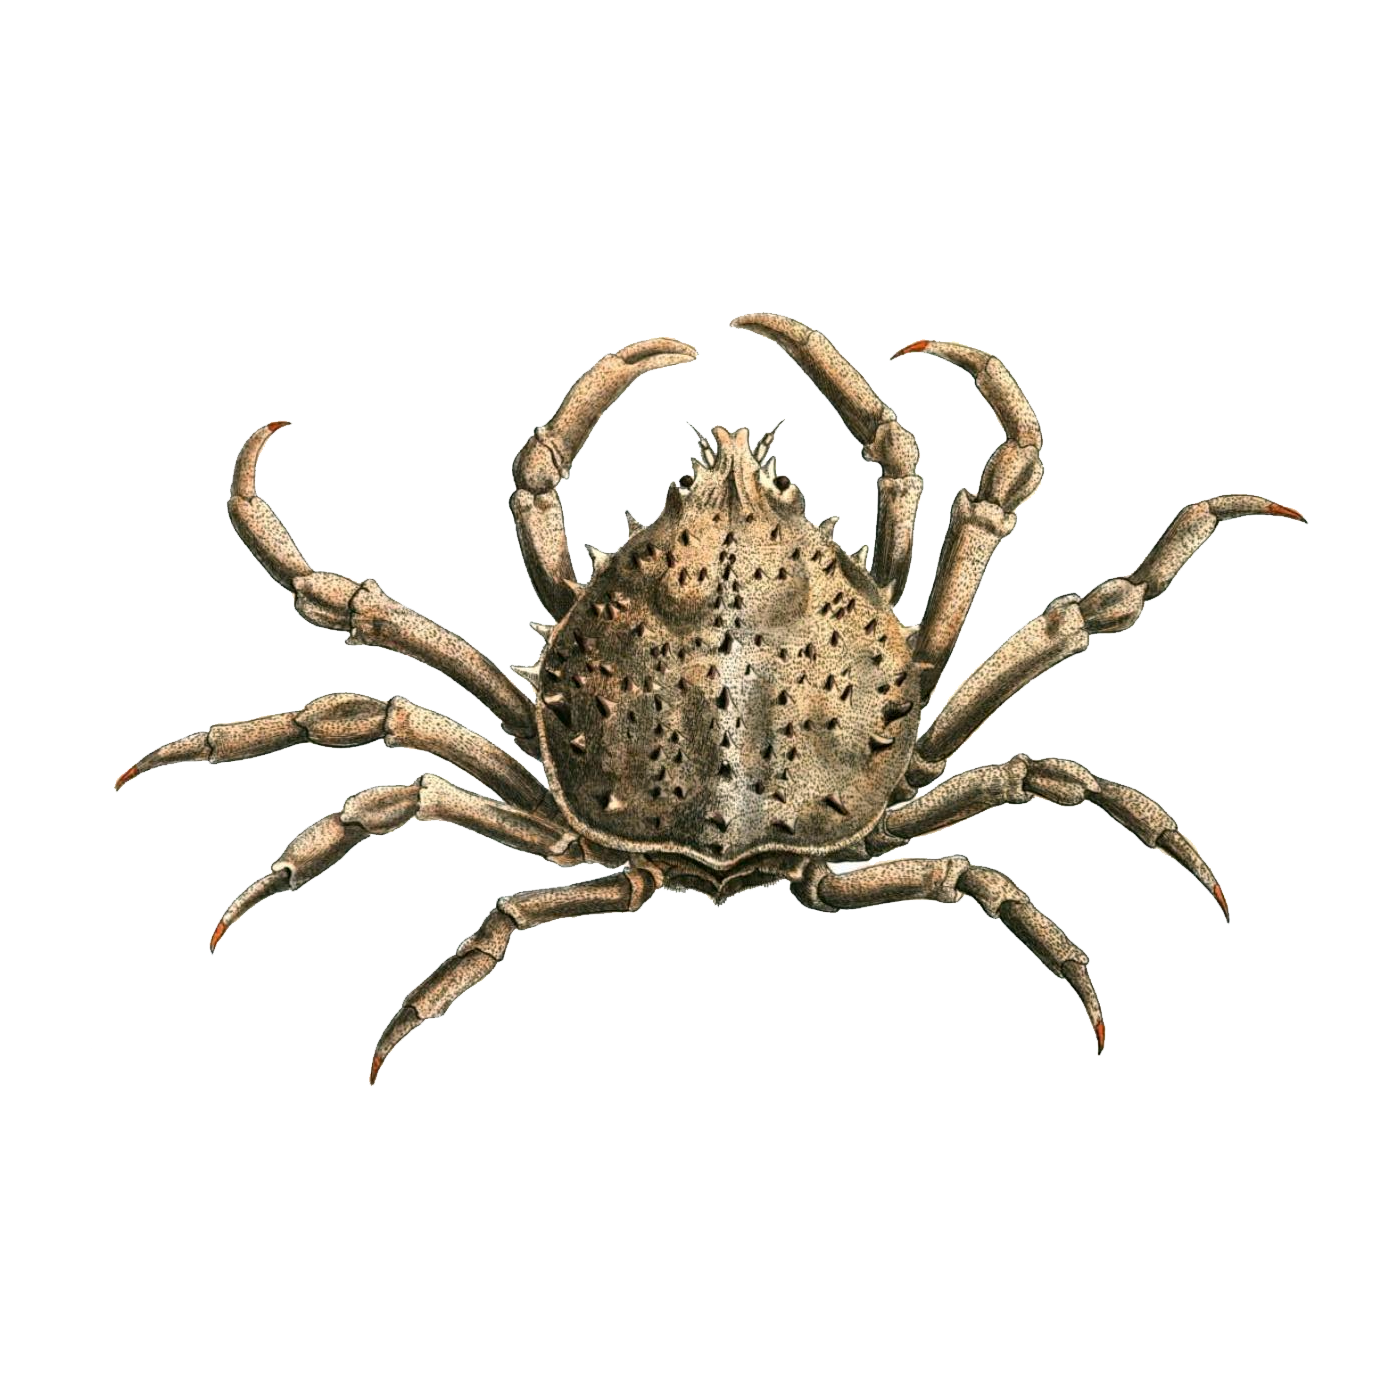 Crab Spider Transparent Image